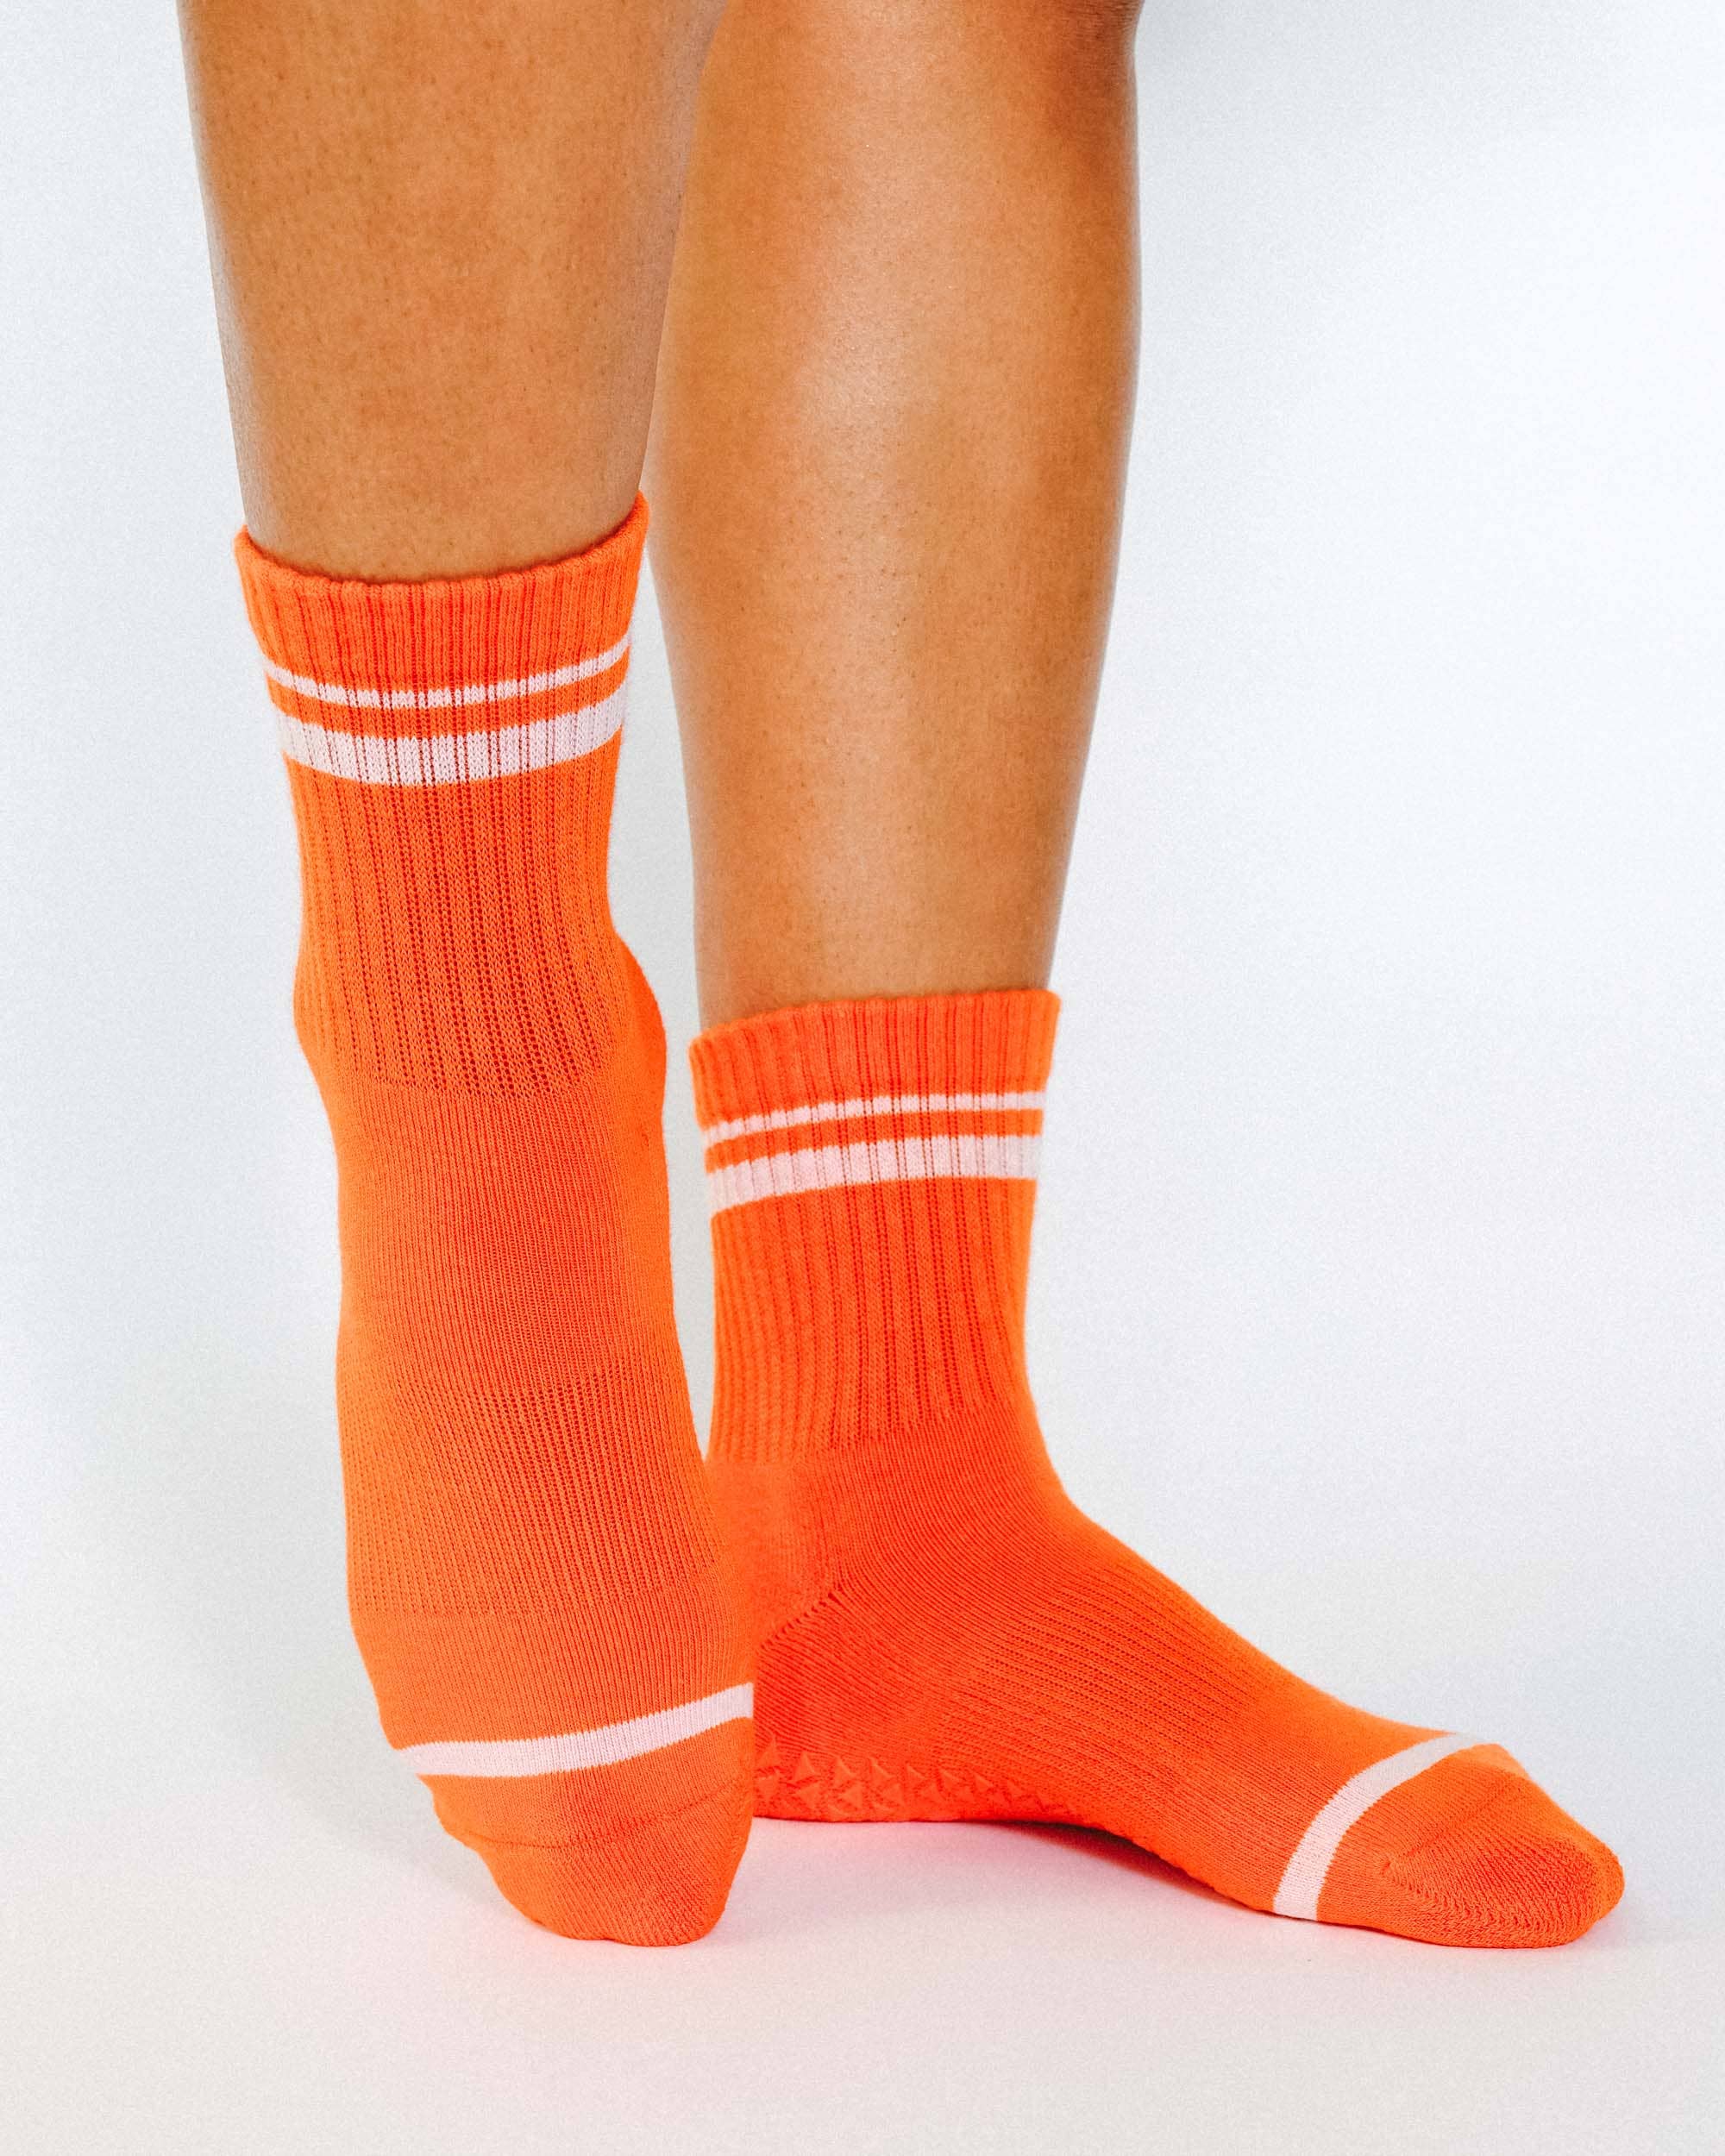 Sore AF Sticky Socks for Barre, Pilates, Yoga